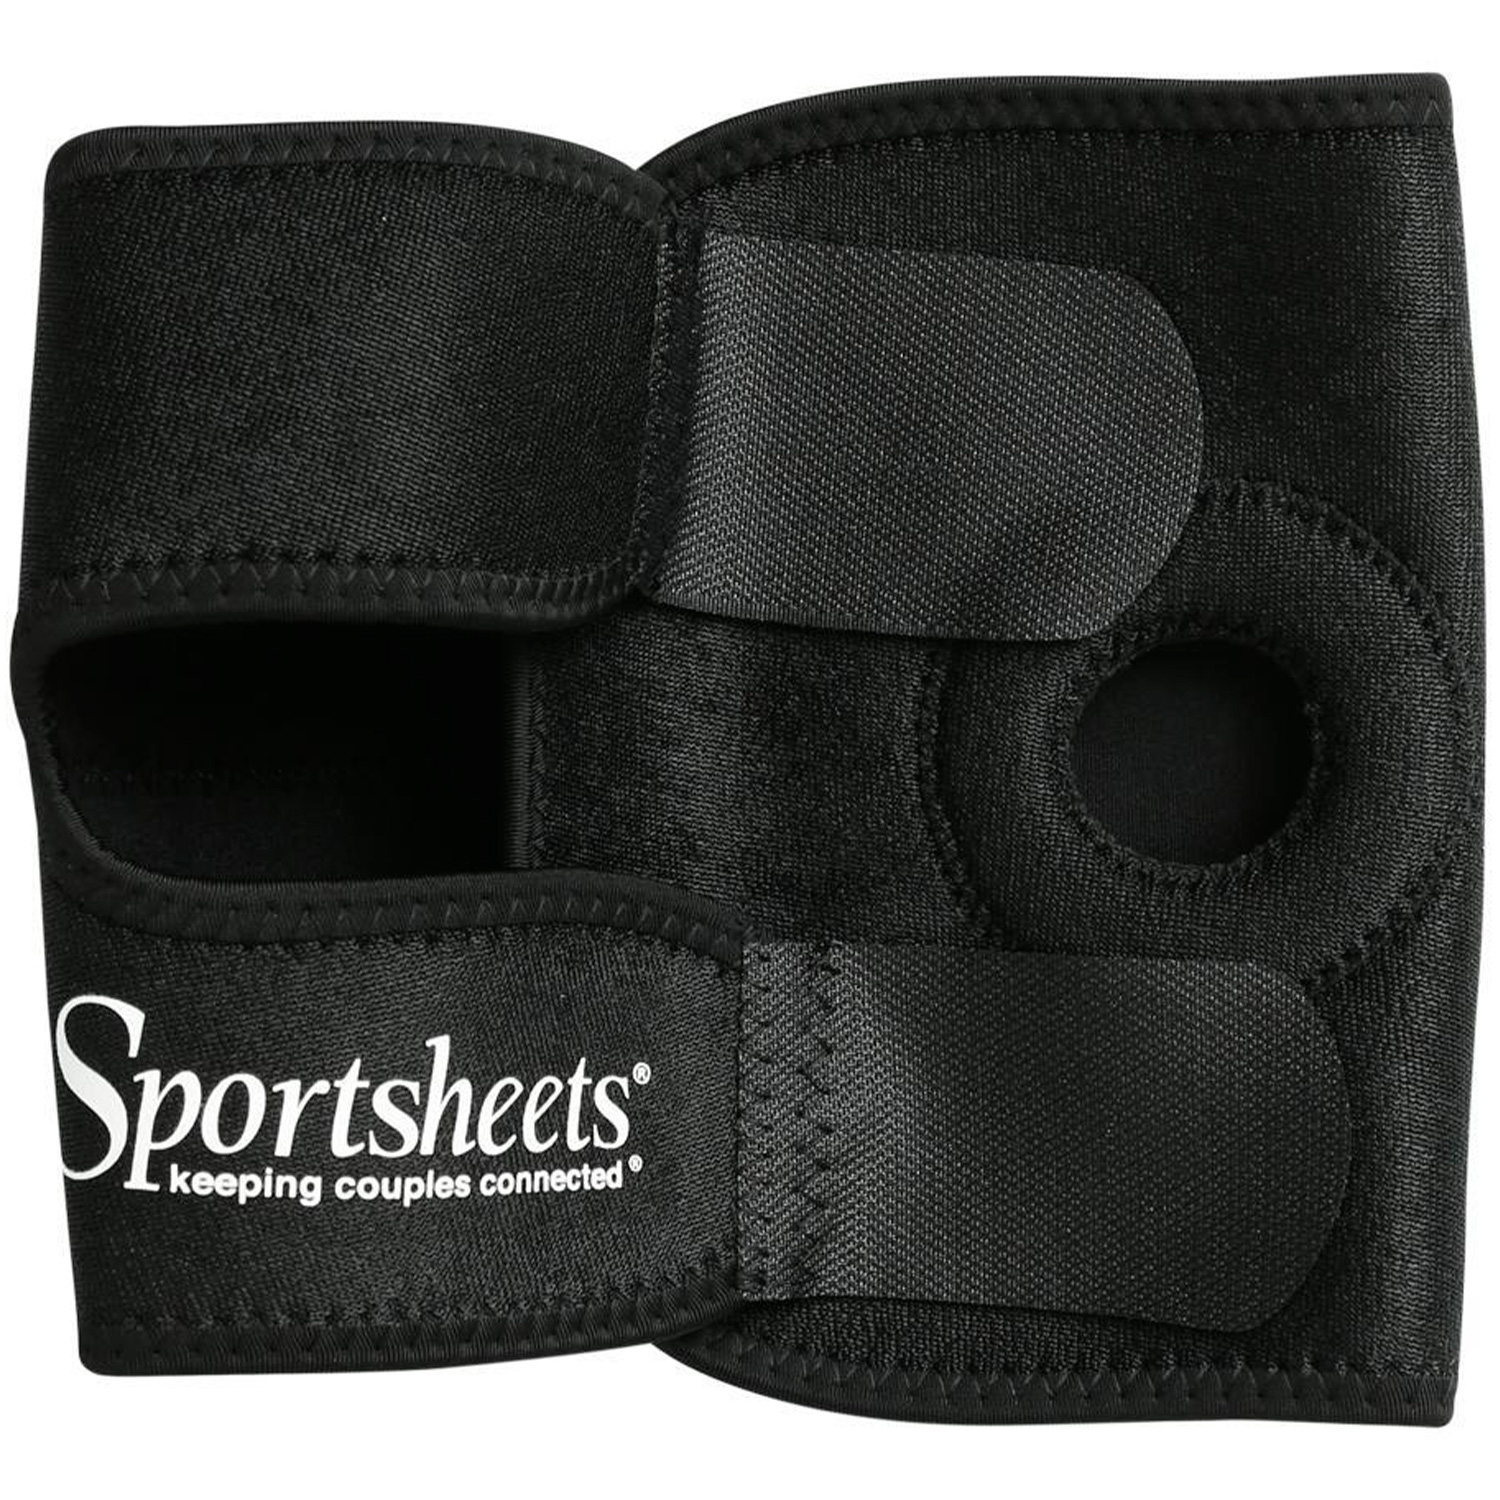 Sportsheets Strap-on Harness til Lår - Sort